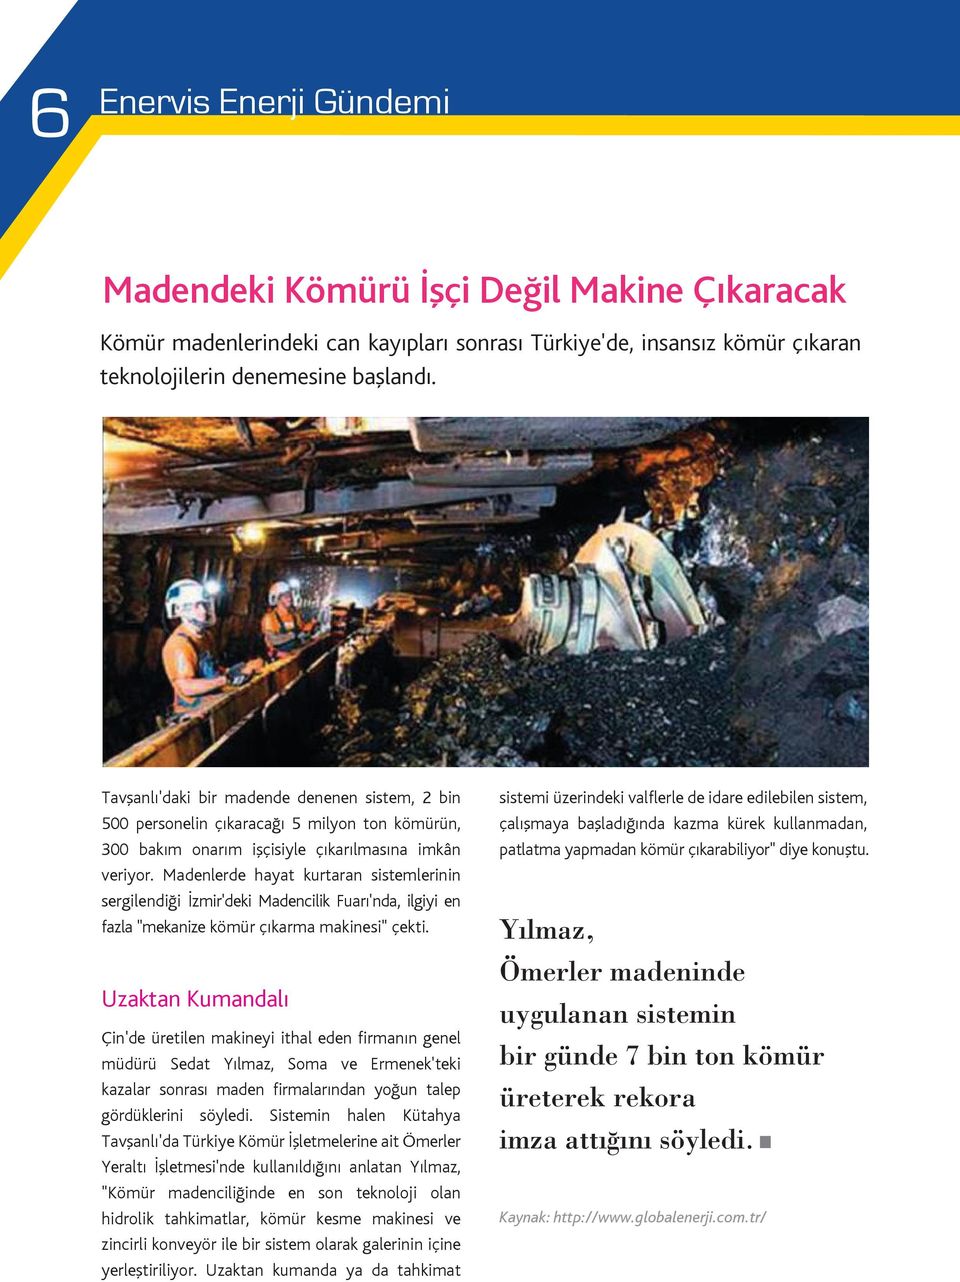 Madenlerde hayat kurtaran sistemlerinin sergilendiği İzmir'deki Madencilik Fuarı'nda, ilgiyi en fazla "mekanize kömür çıkarma makinesi" çekti.